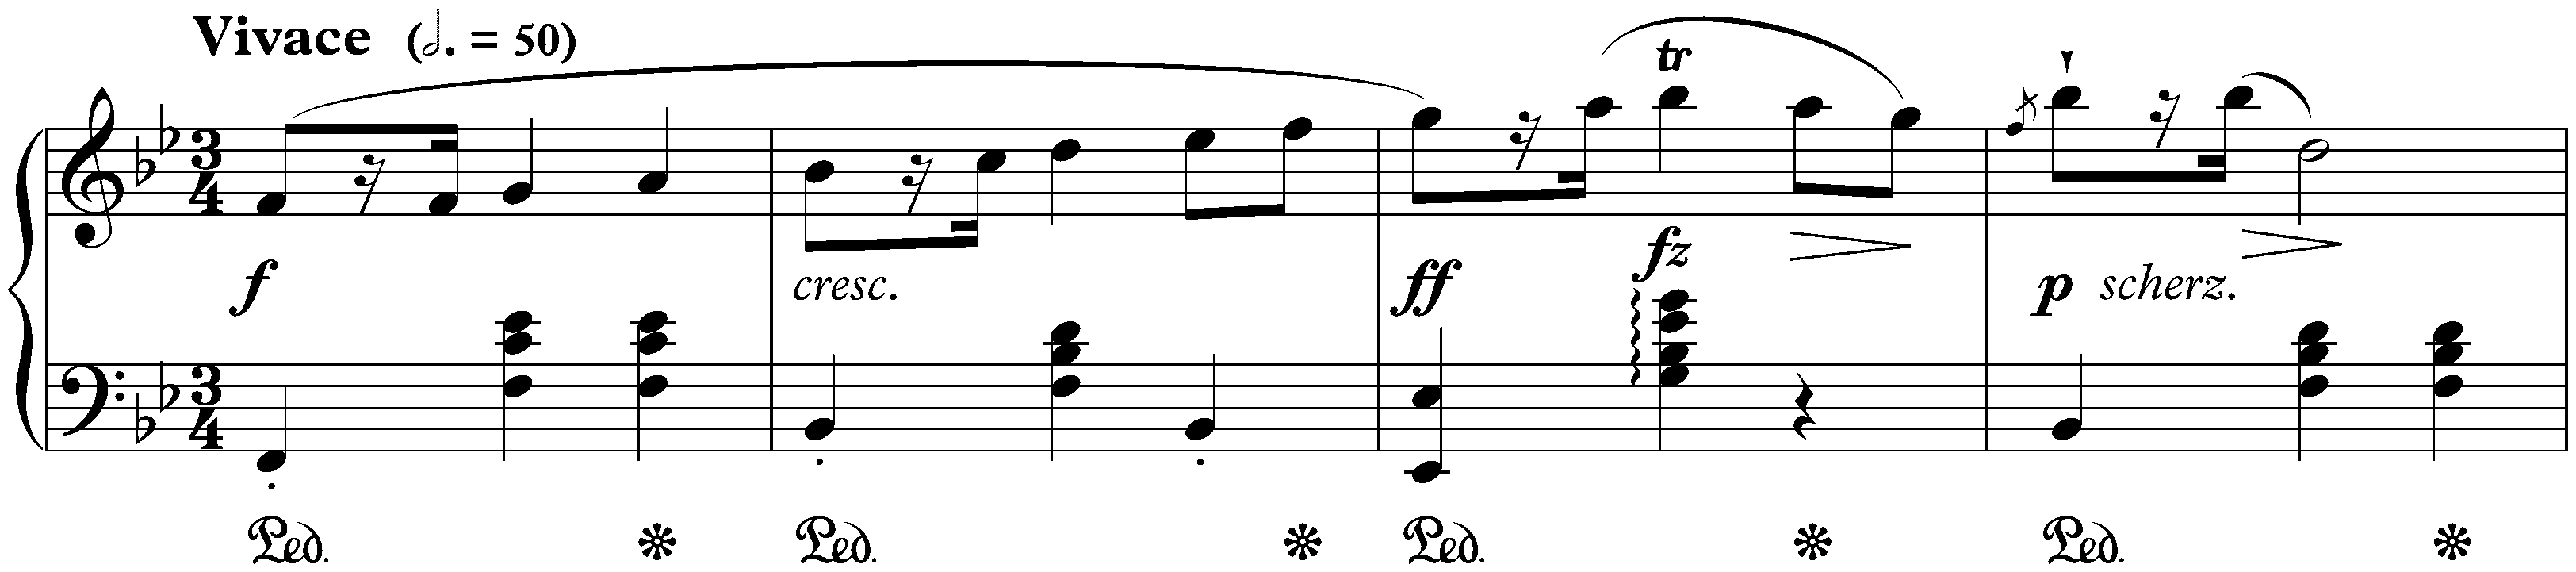 Five Mazurkas, op. 7; 1. B-flat major